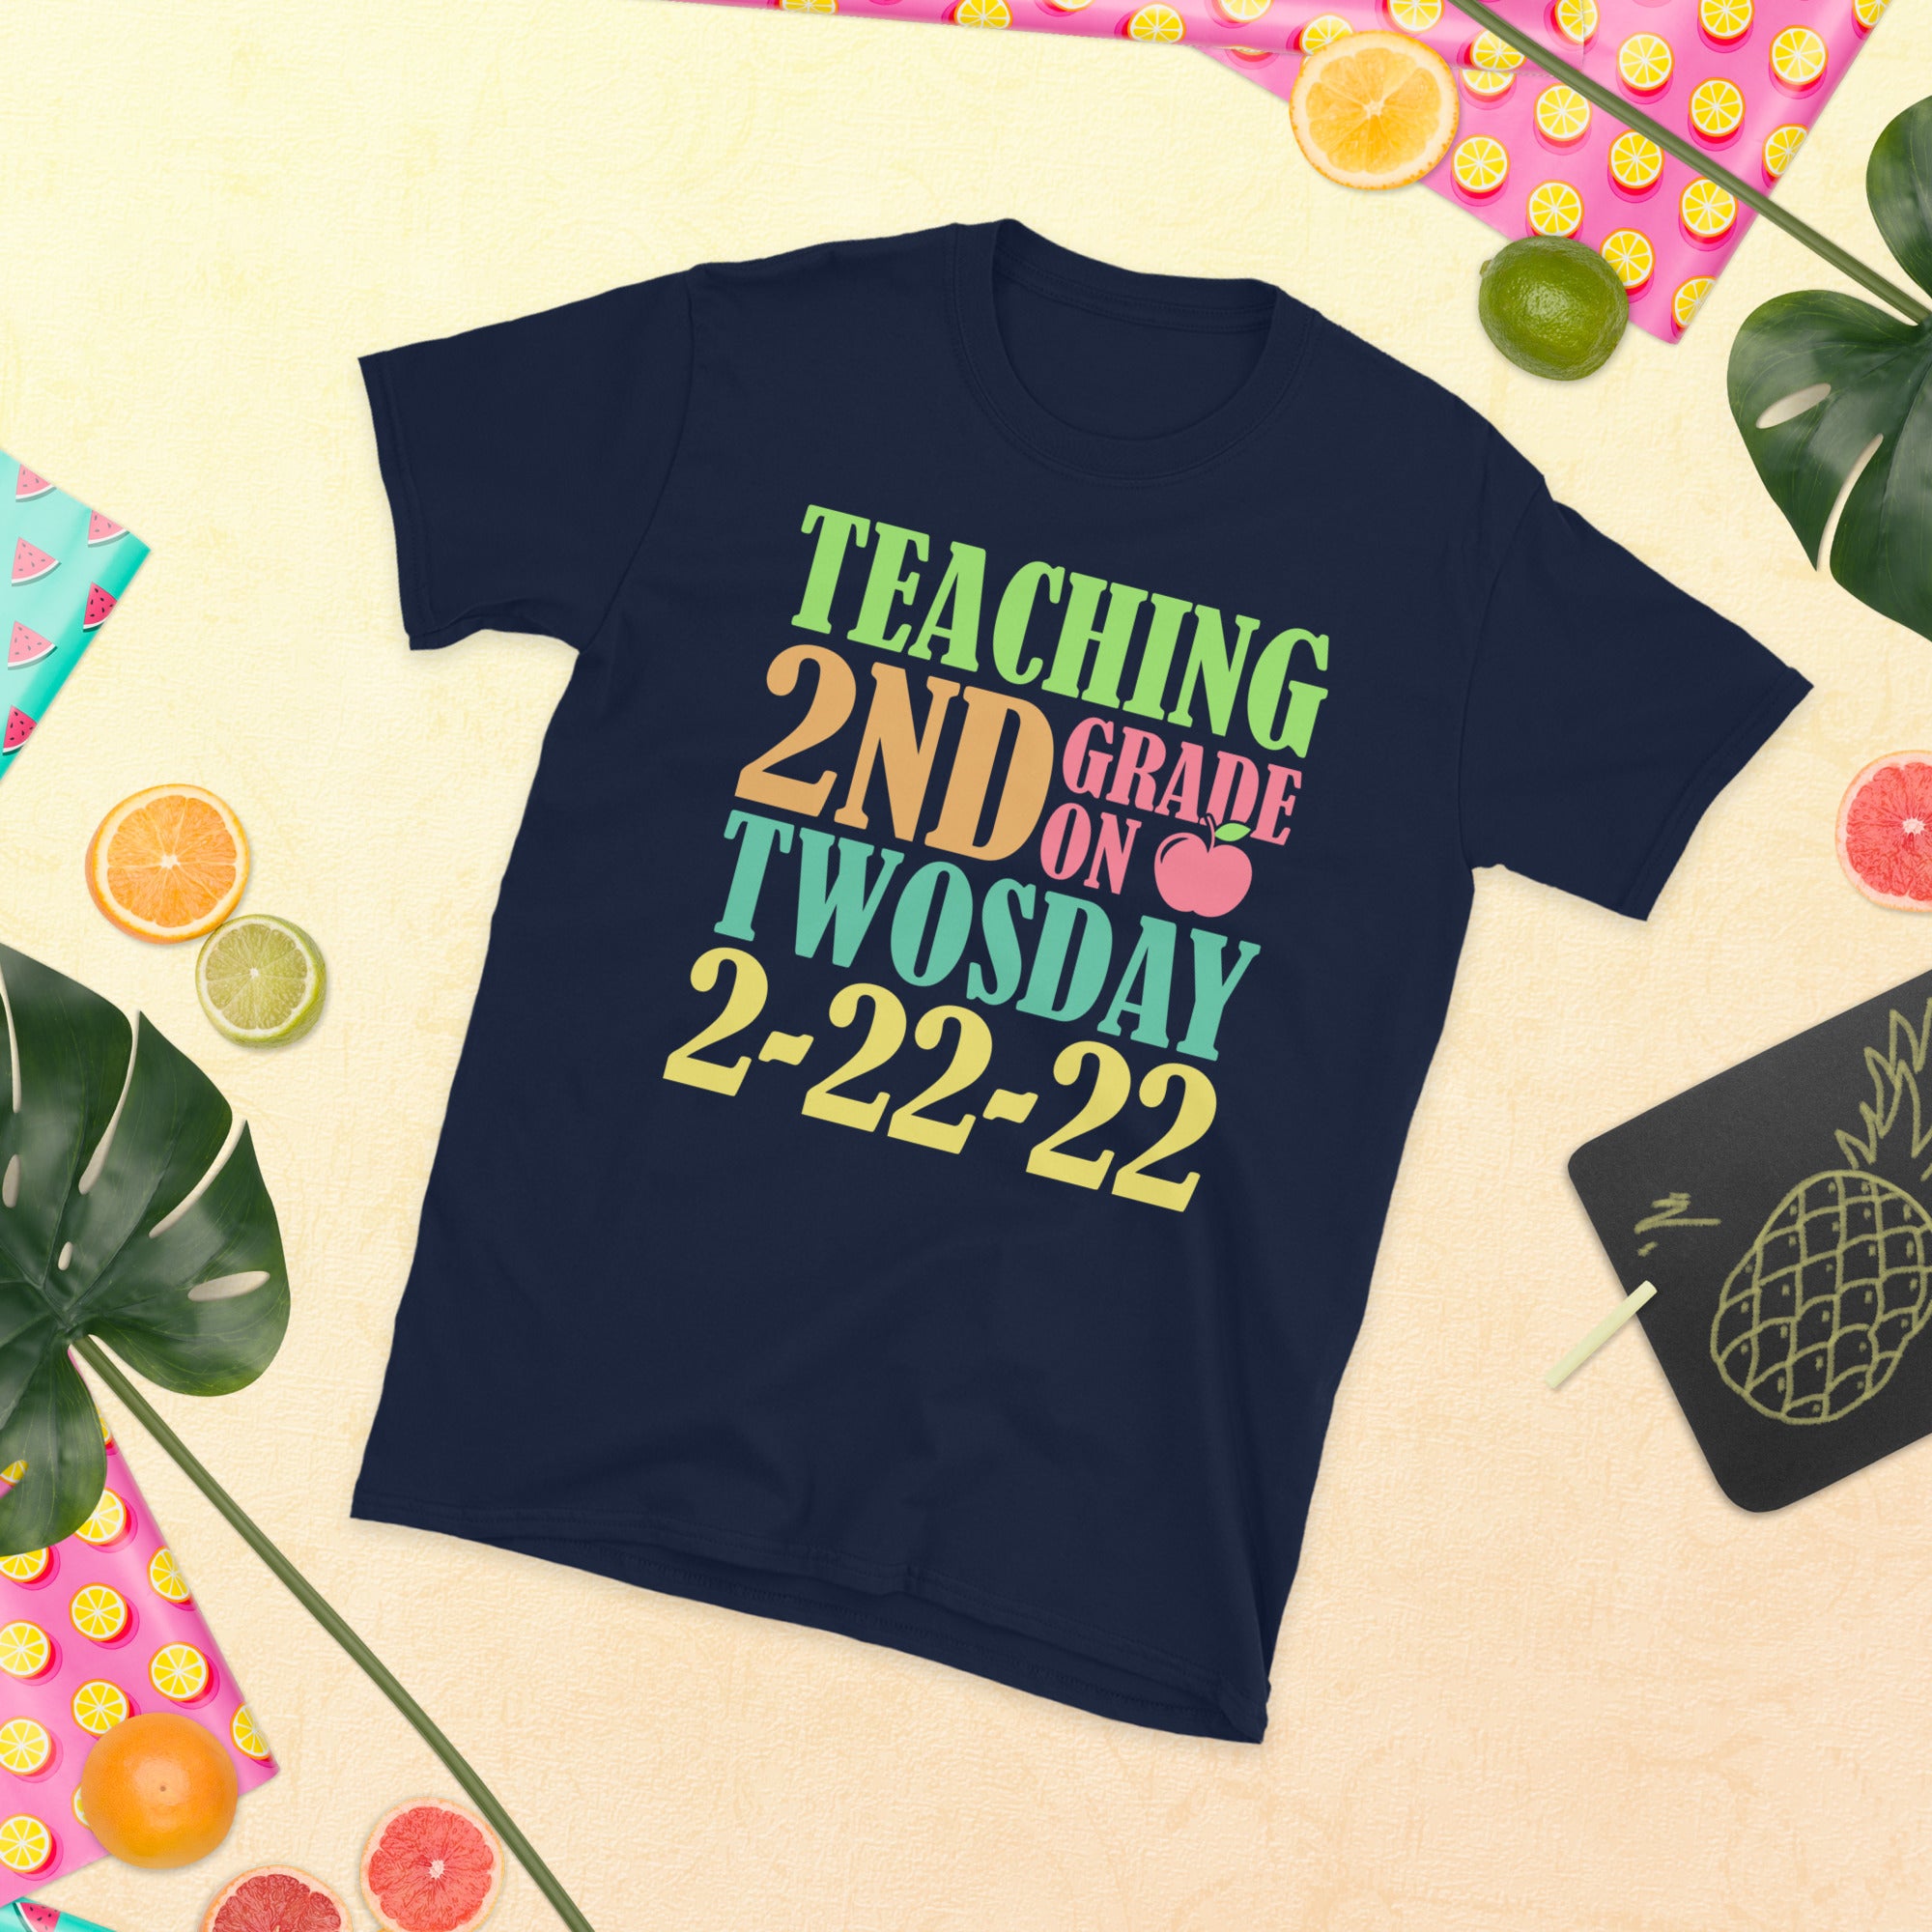 2nd Grade Teacher Shirt, Teaching 2nd Grade on Twosday TShirt, Funny Twosday Shirt, Tuesday 2-22-22, 2nd Grade Teacher Gifts, Teacher TShirt - Madeinsea©